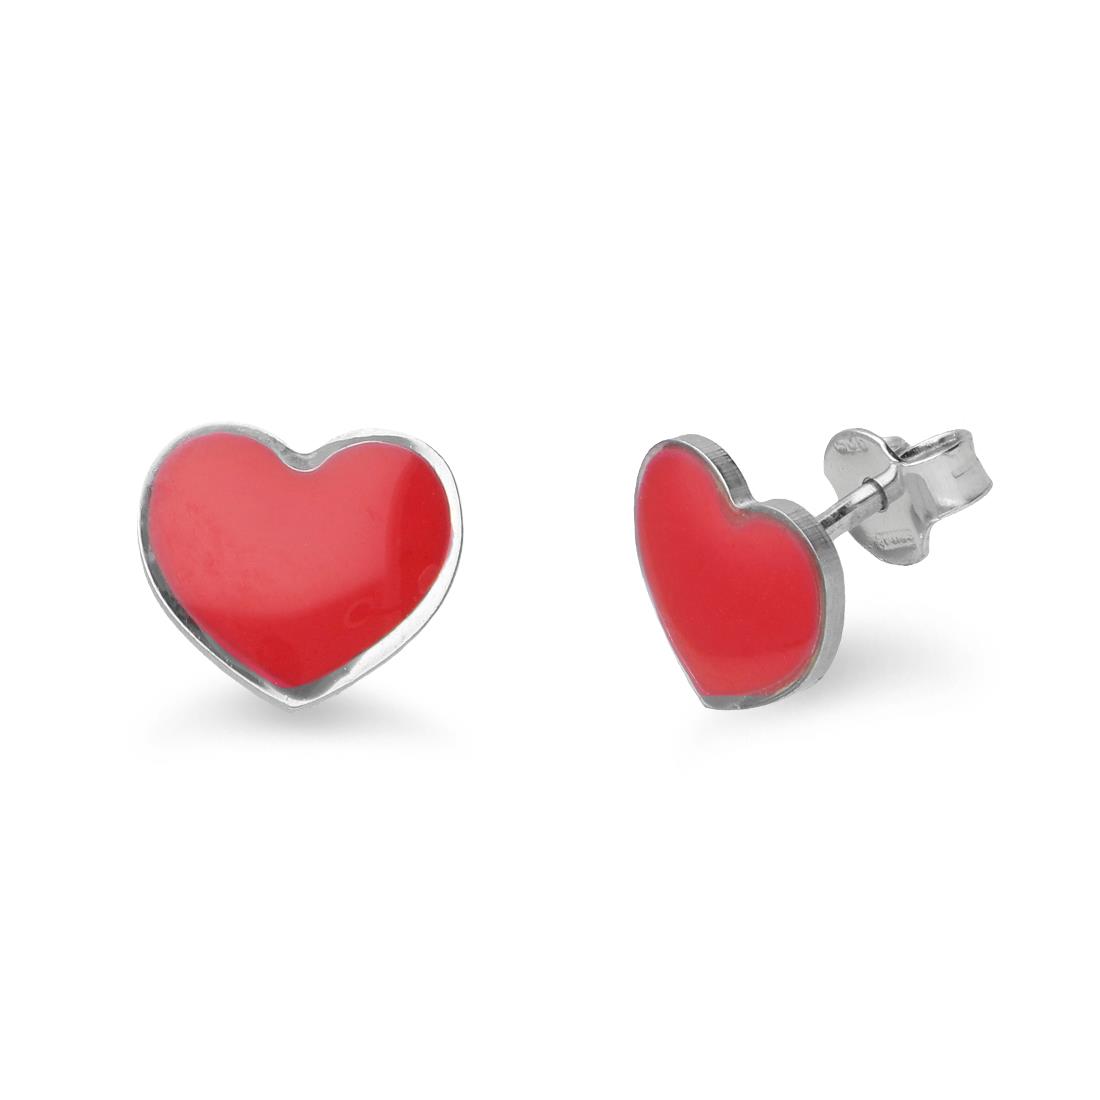 Silver earrings with red heart - ALFIERI & ST. JOHN 925